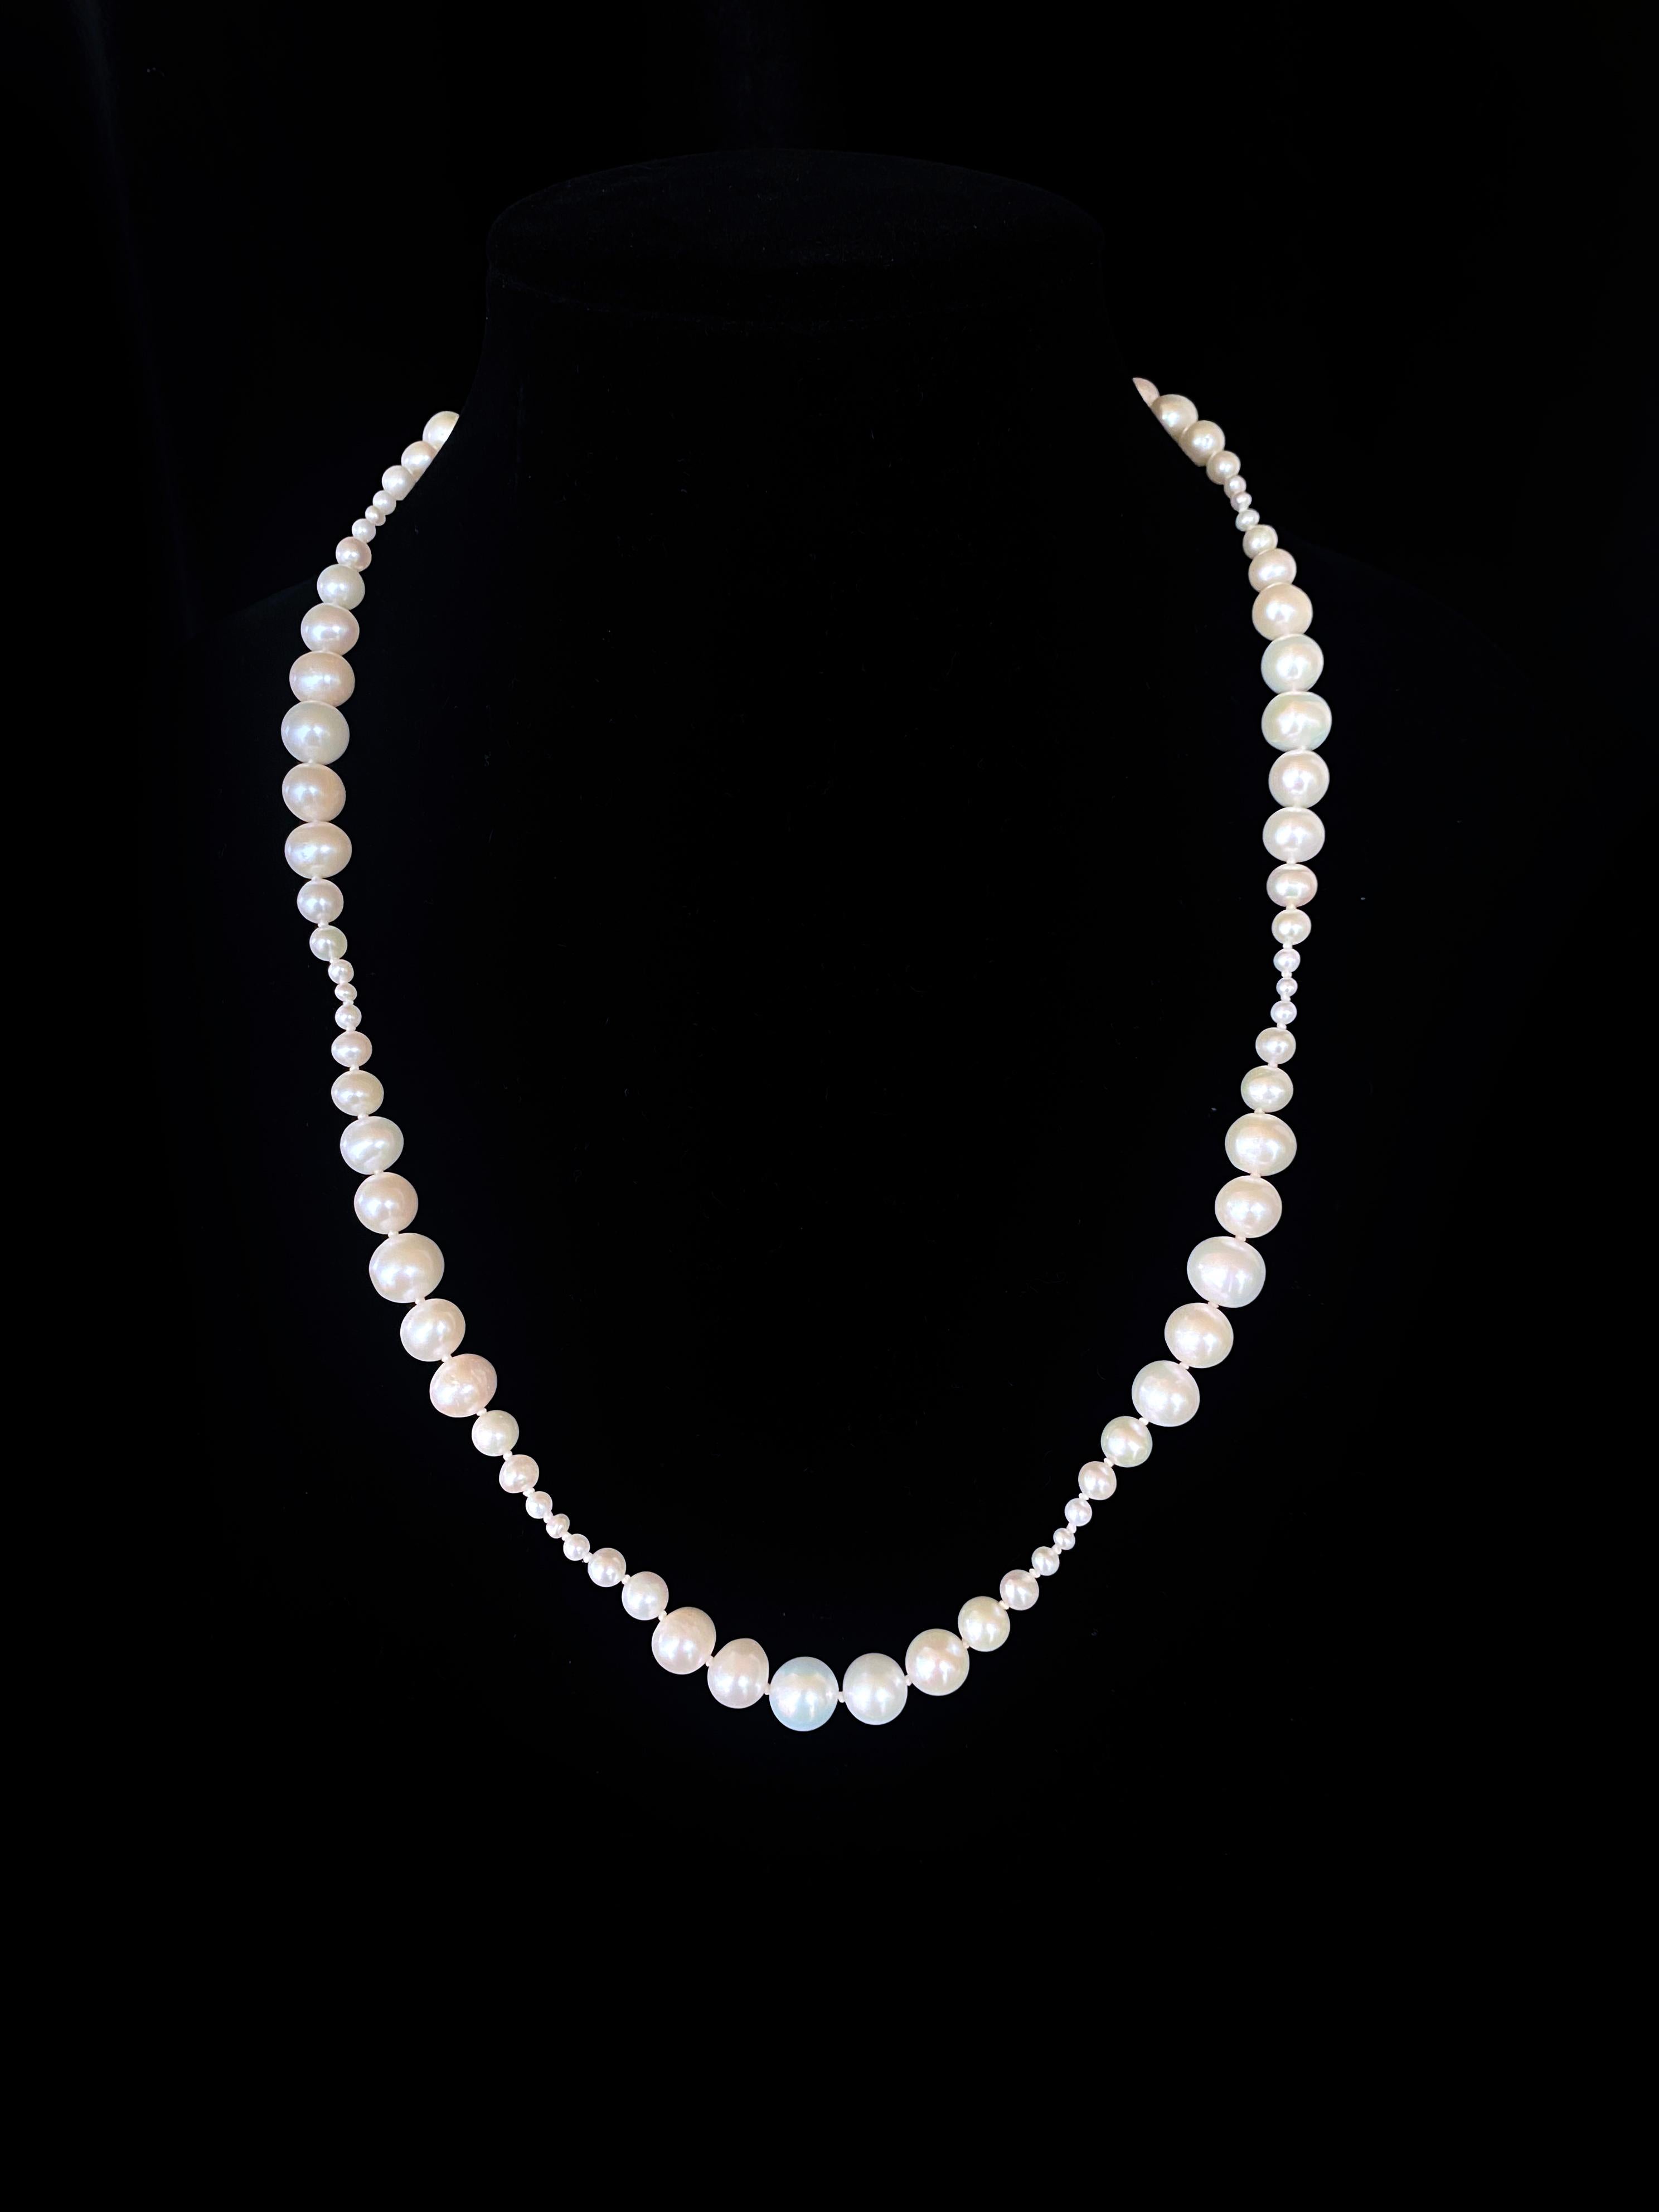 Fabriqué par Marina J. Ce collier est fabriqué à partir de perles blanches très brillantes qui affichent un éclat irisé, toutes enfilées ensemble pour former une pièce unique. Les perles de différentes tailles (de 2 mm à 9 mm) sont triées sur le